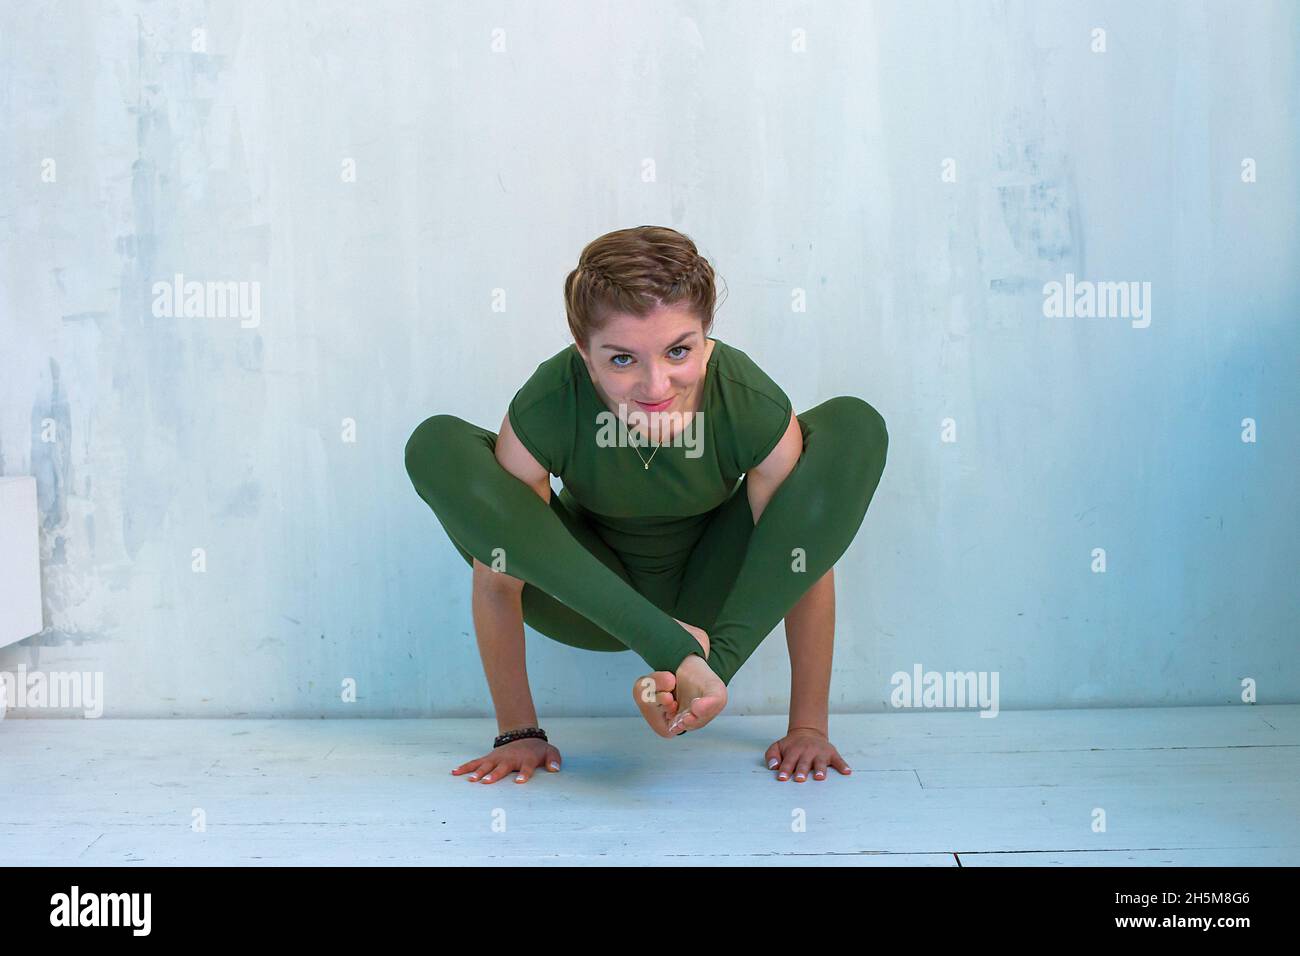 Ein Mädchen in grüner Sportkleidung führt einen Handstand, eine Pose im Yoga, in der Nähe einer hellen Wand durch Stockfoto